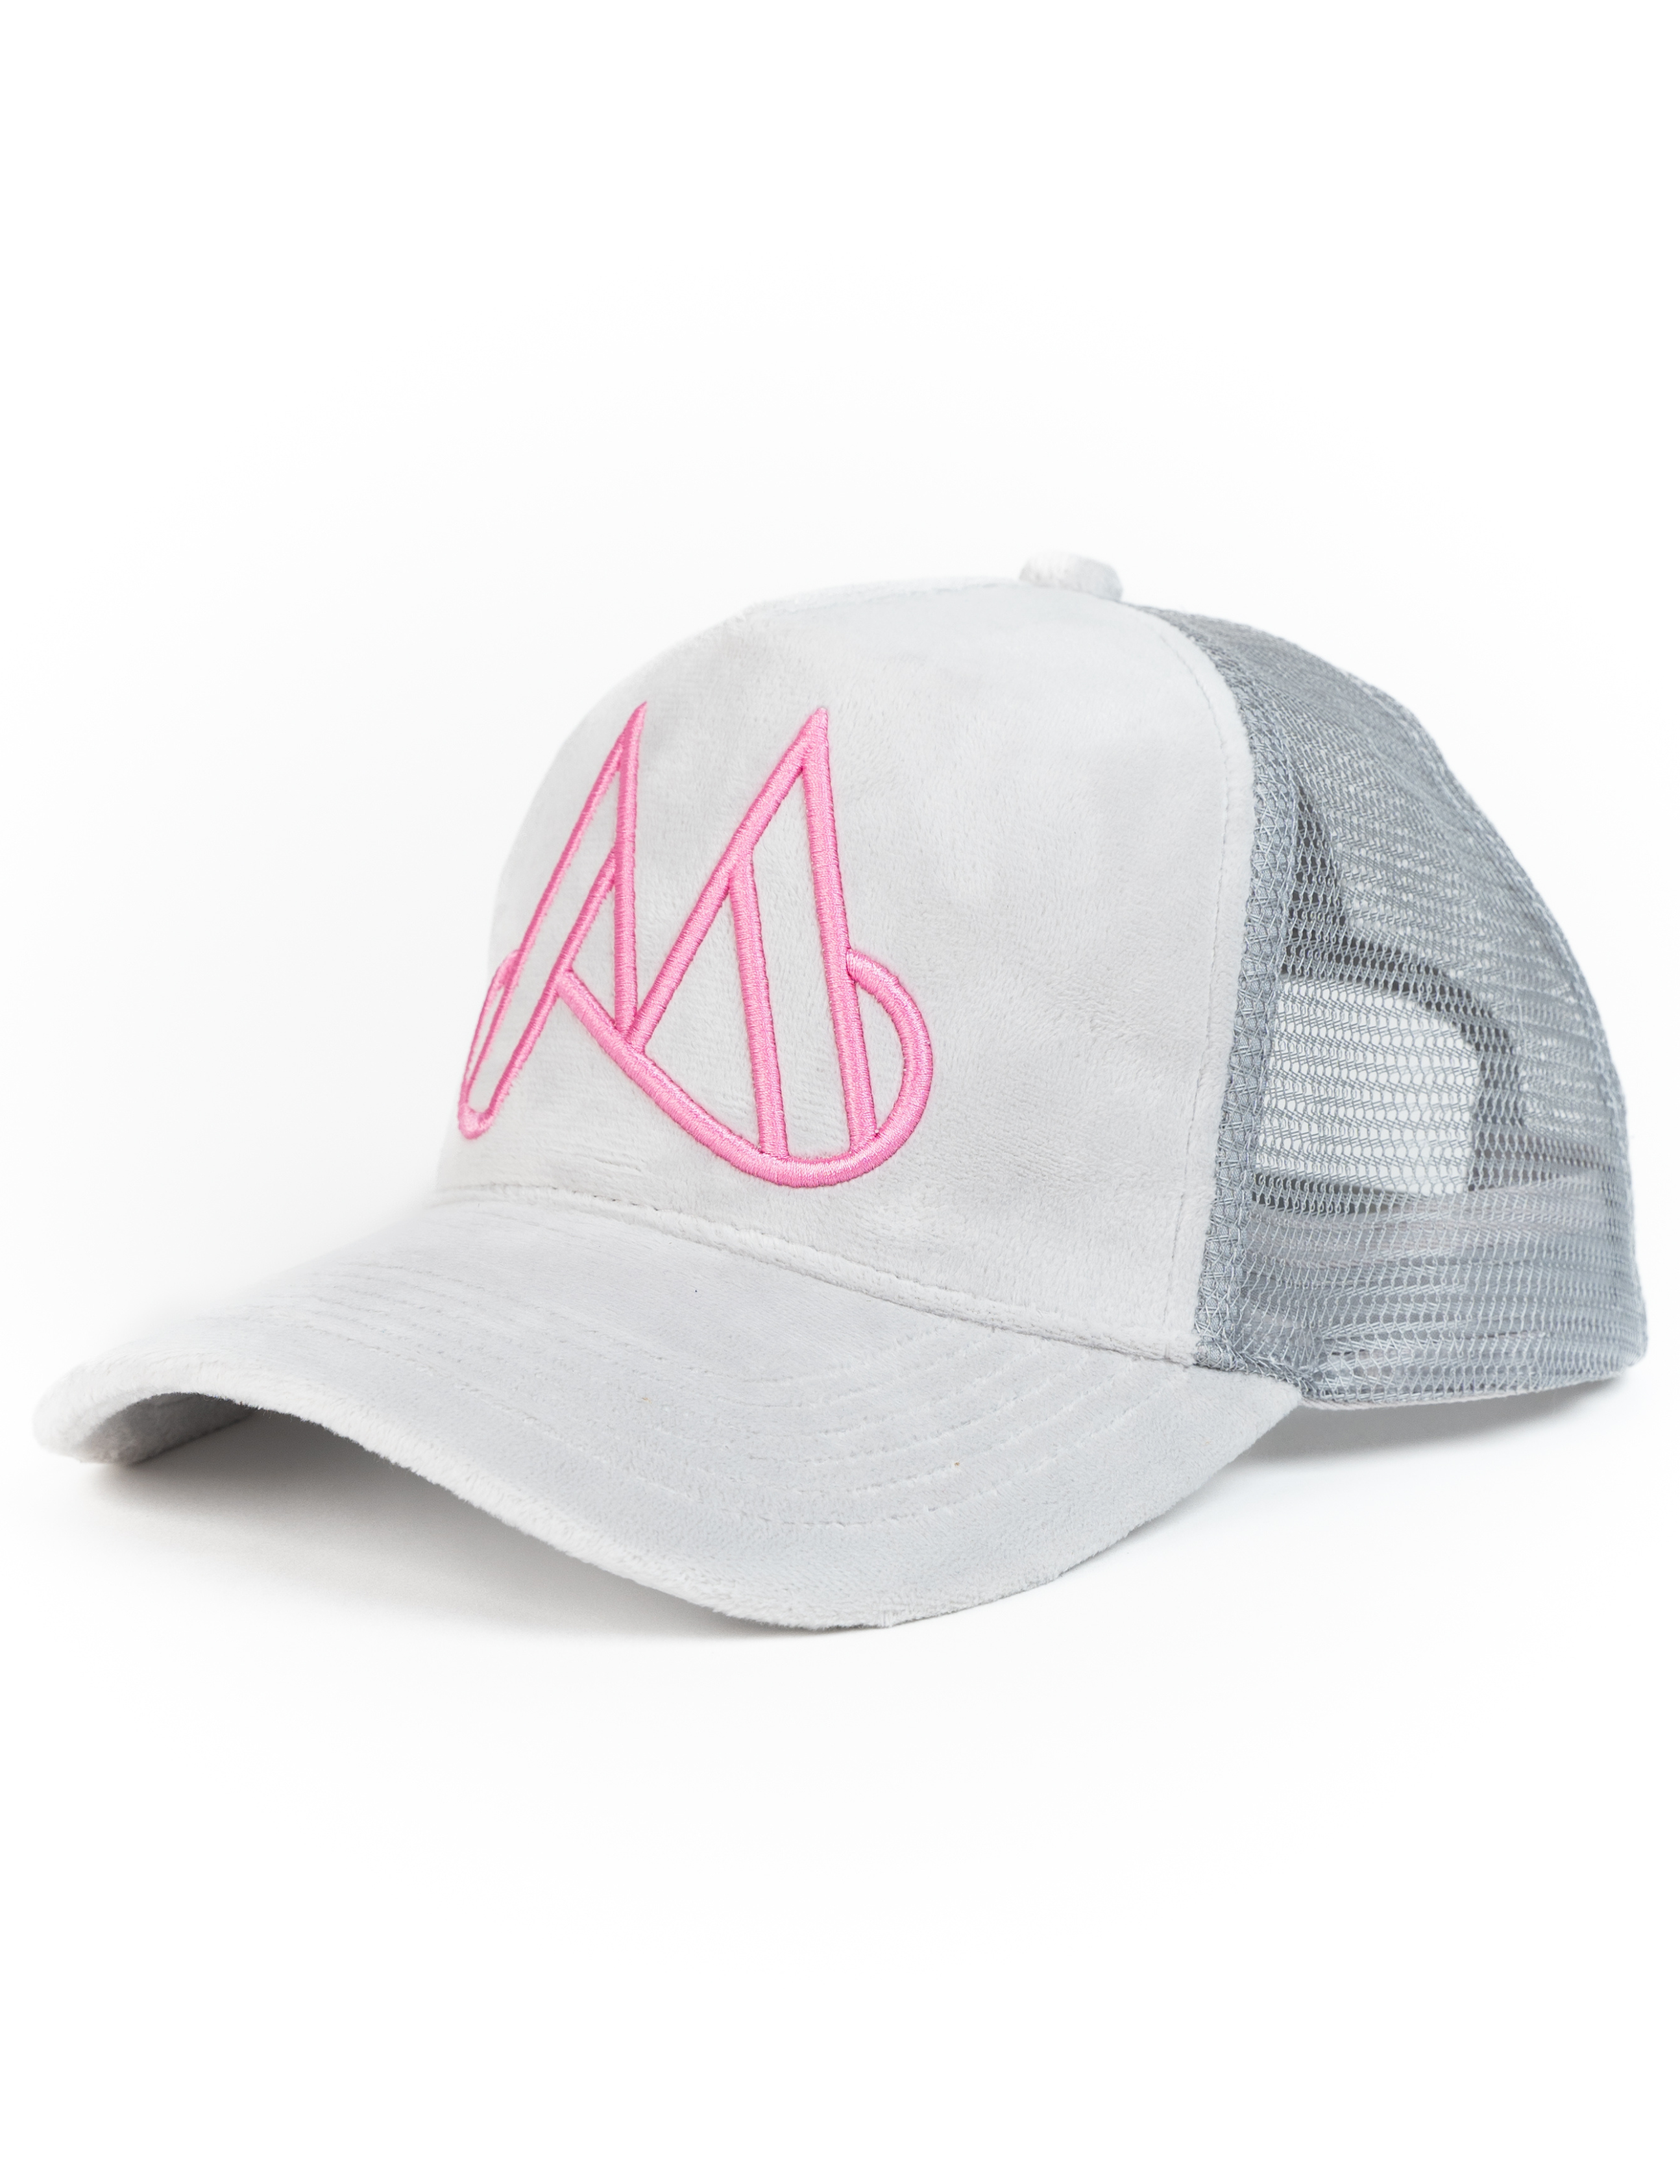 MAGGIORE Unlimited M Logo Grey Cap - Pink Logo - MAGGIORE